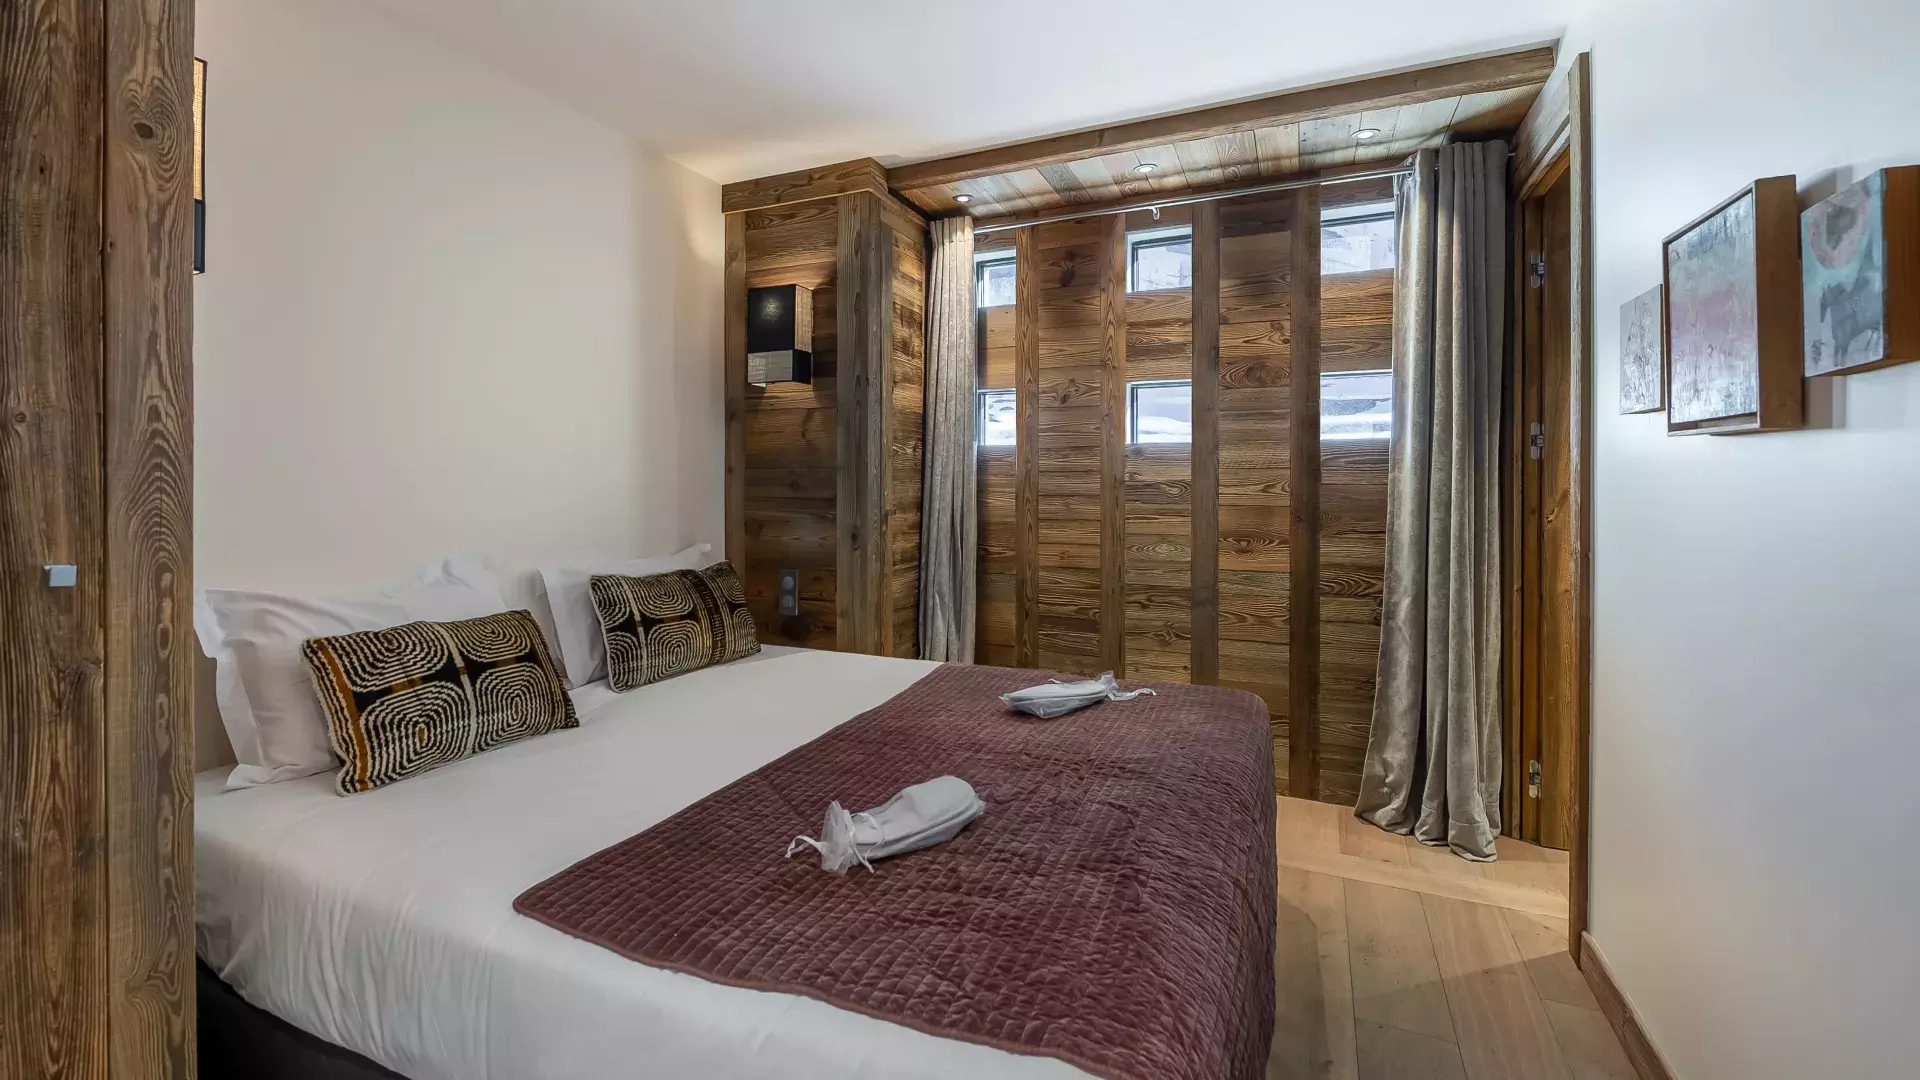 Appartement Fusée - Location chalets Covarel - Val d'Isère Alpes - France – chambre 2